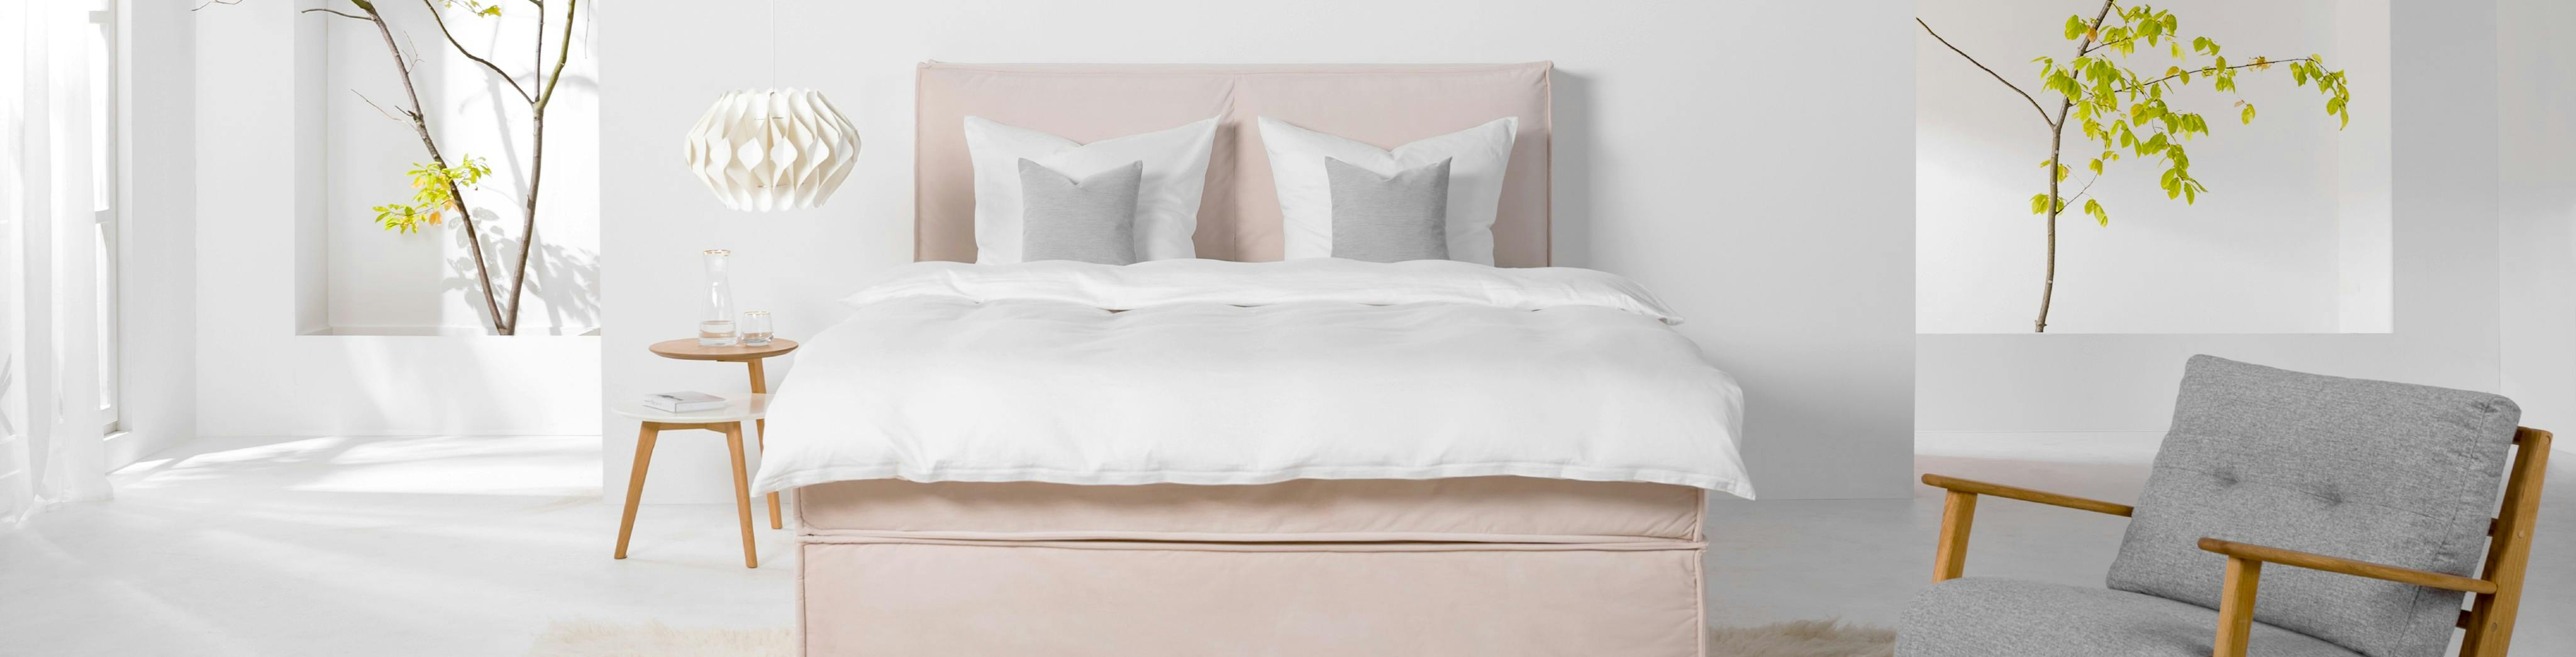 Rosa Boxspringbett mit weißer Bettwäsche in einem hellen Raum mit Sessel und Nachttisch